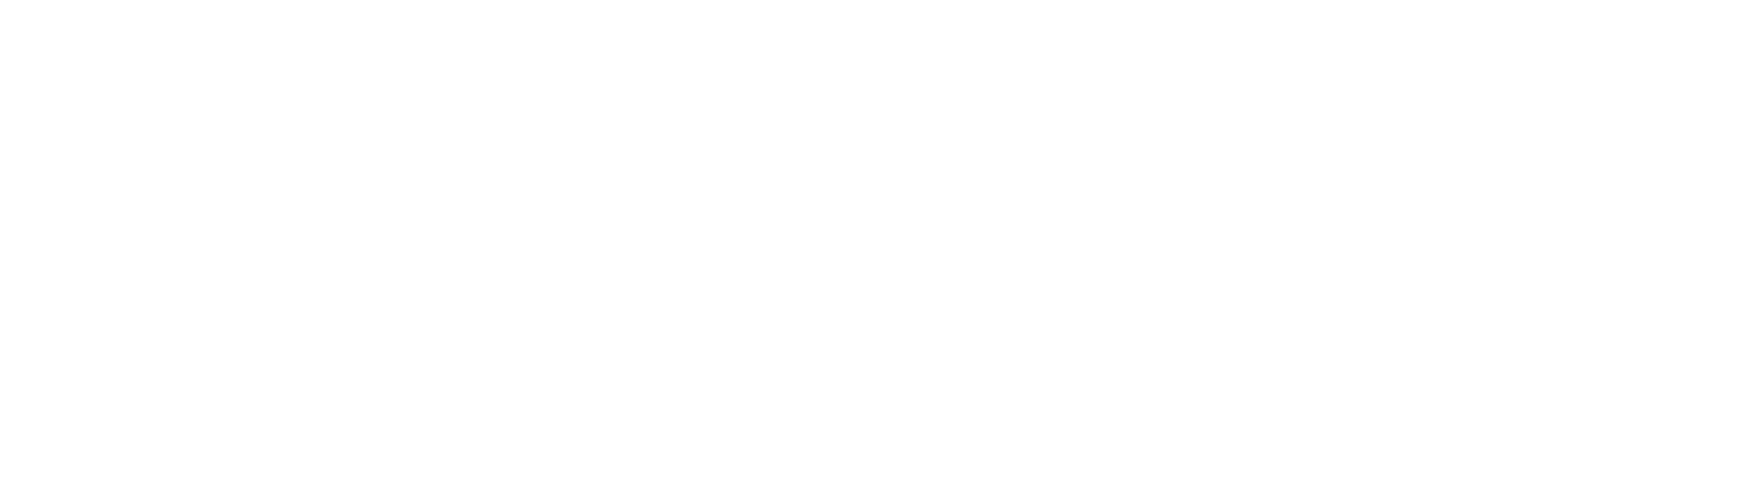 SERAFICA_logo_bianco_fondo-trasparente